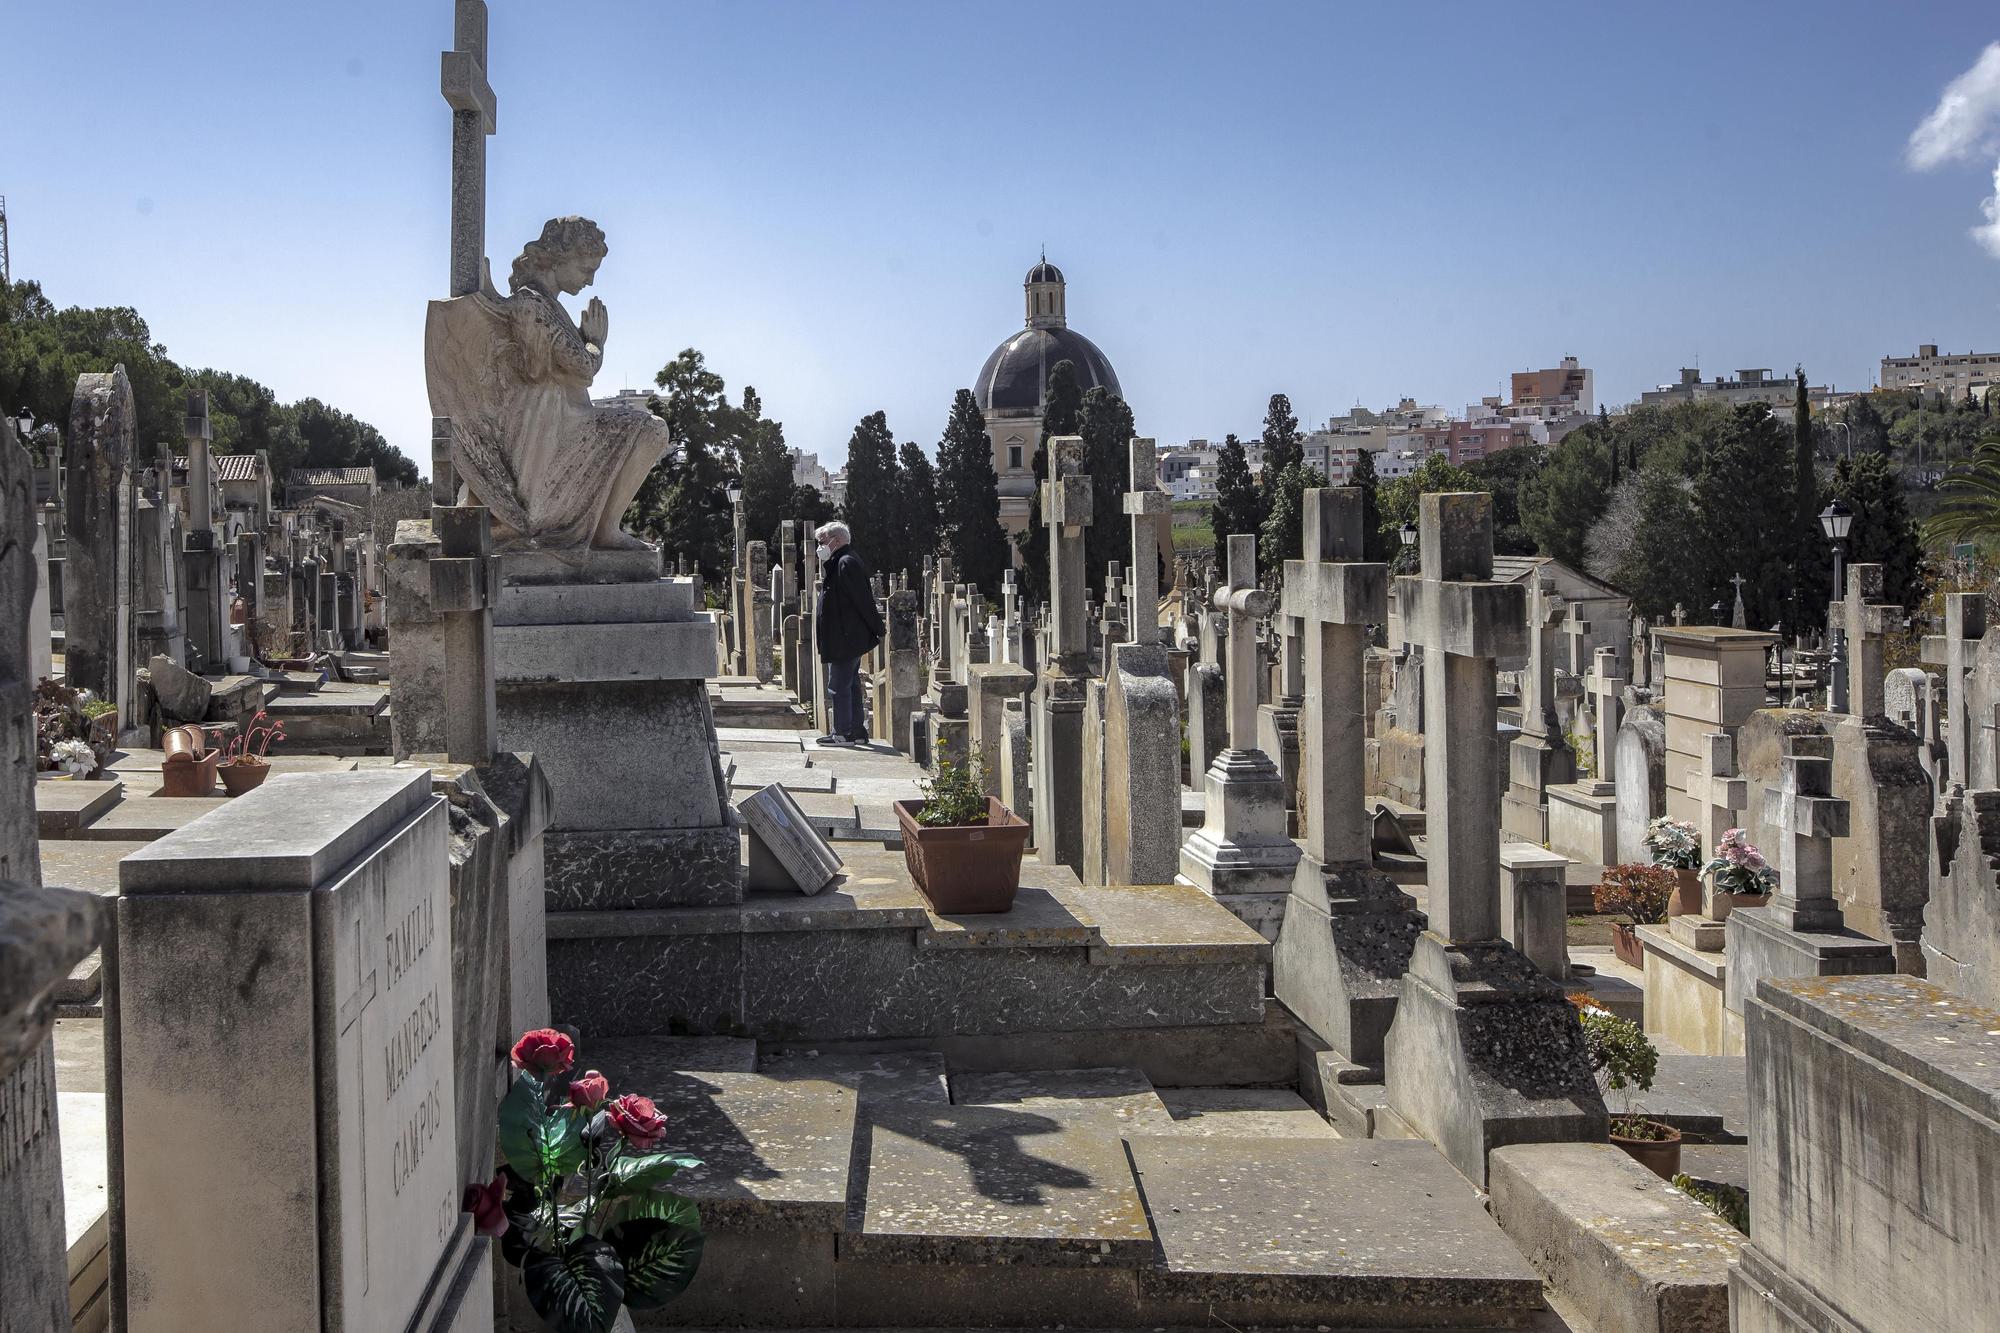 El cementerio de Palma acumula dos siglos de historia y arte